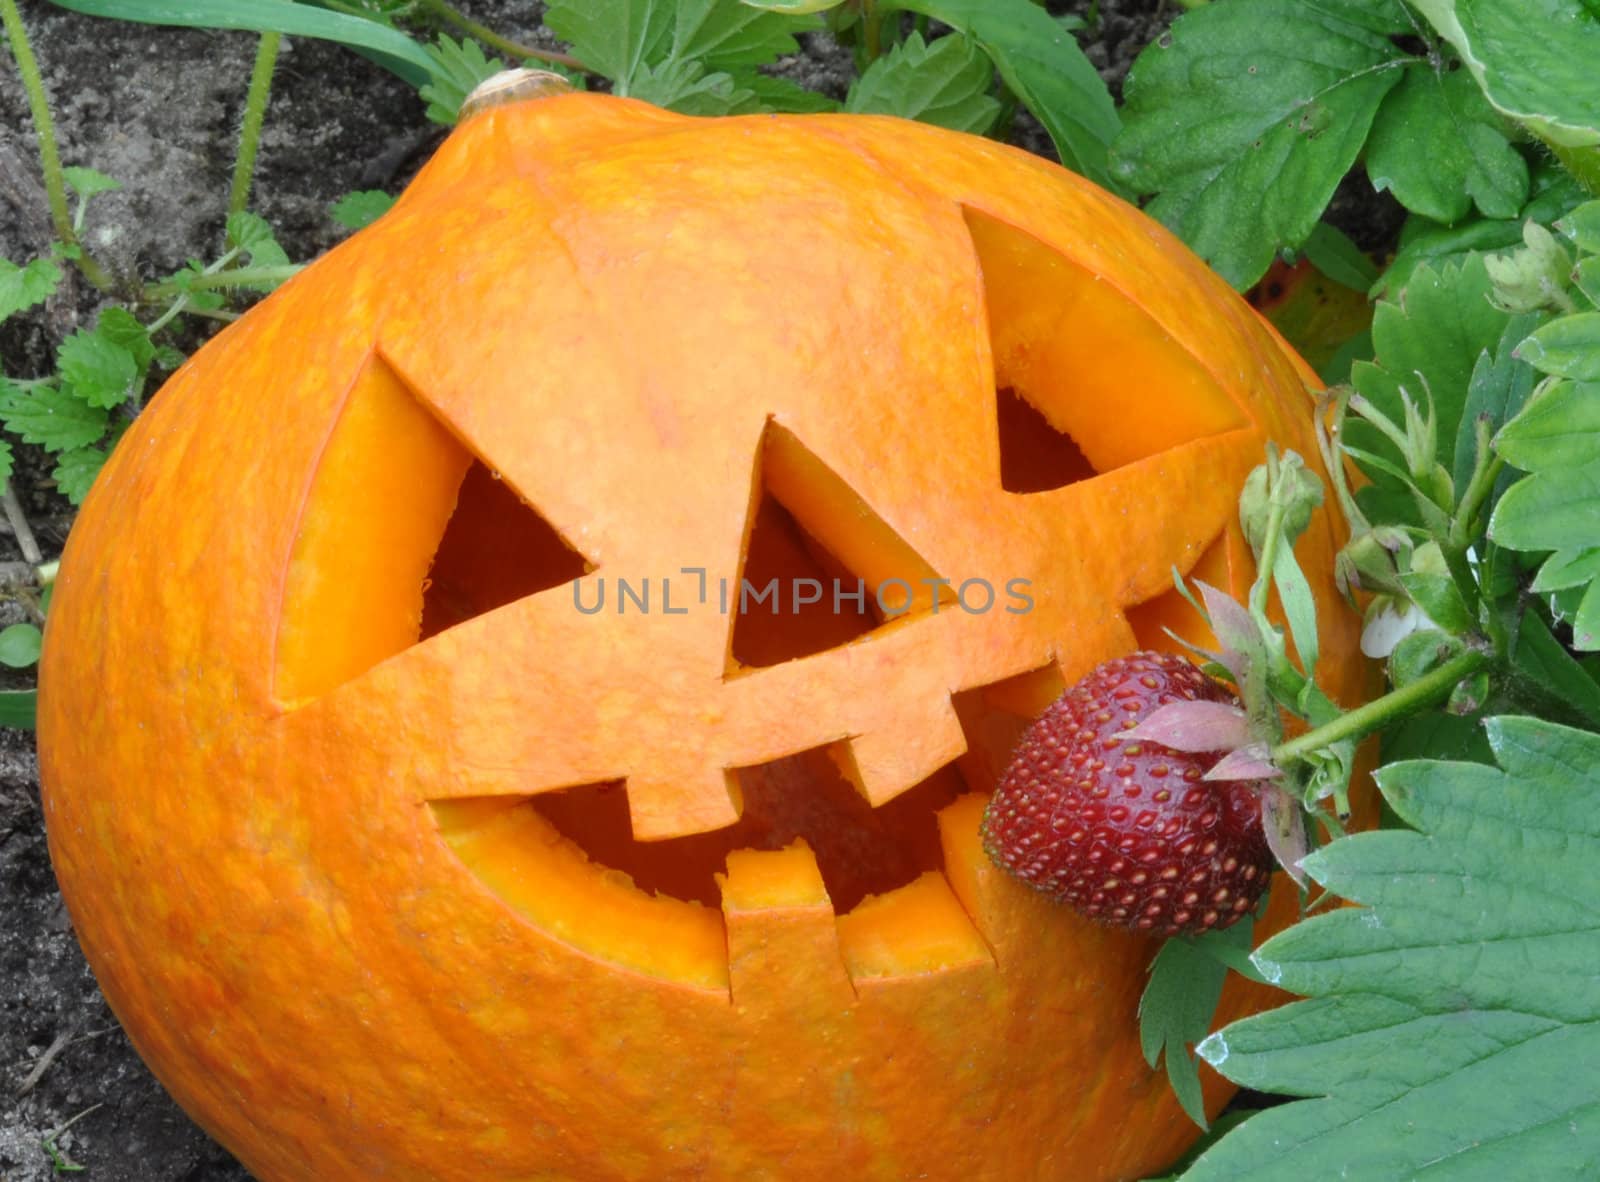 Symbol Halloween - a pumpkin О Lantern in wild strawberry thickets